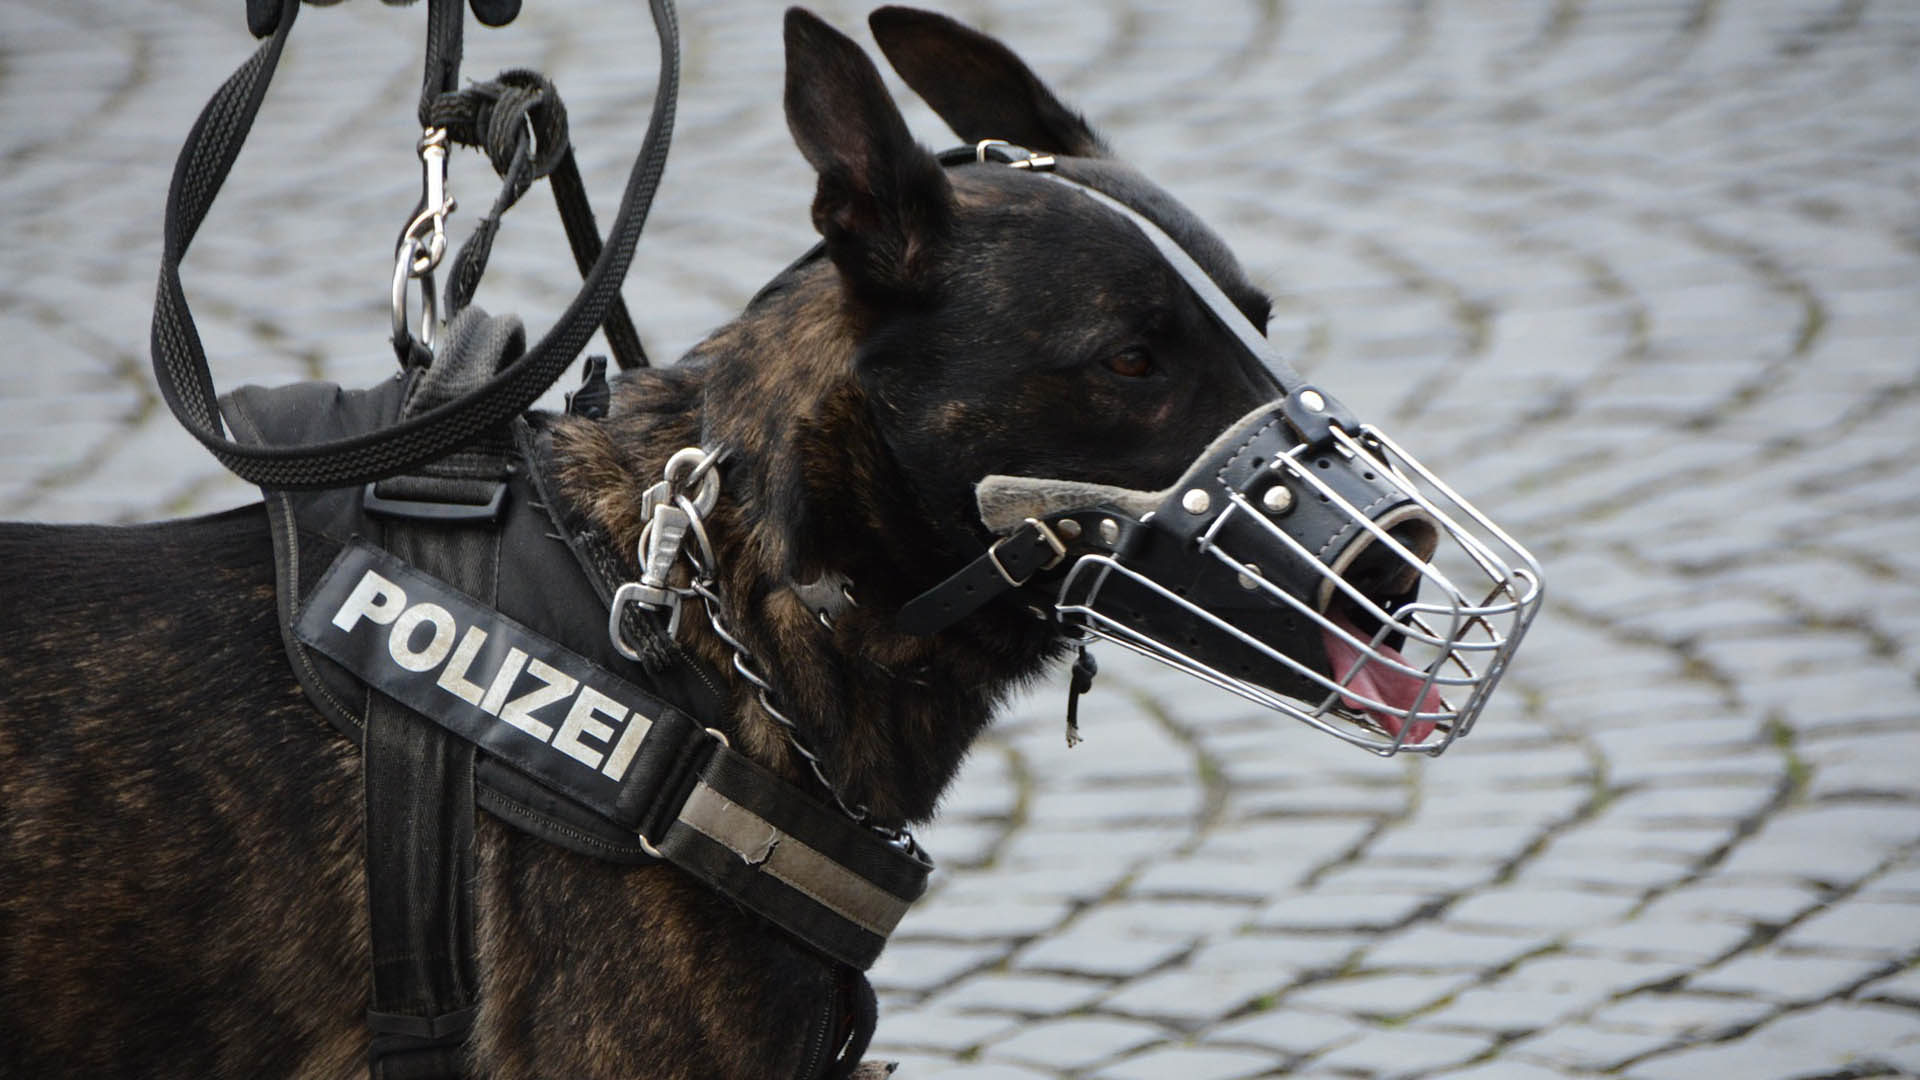 Polizeihhund